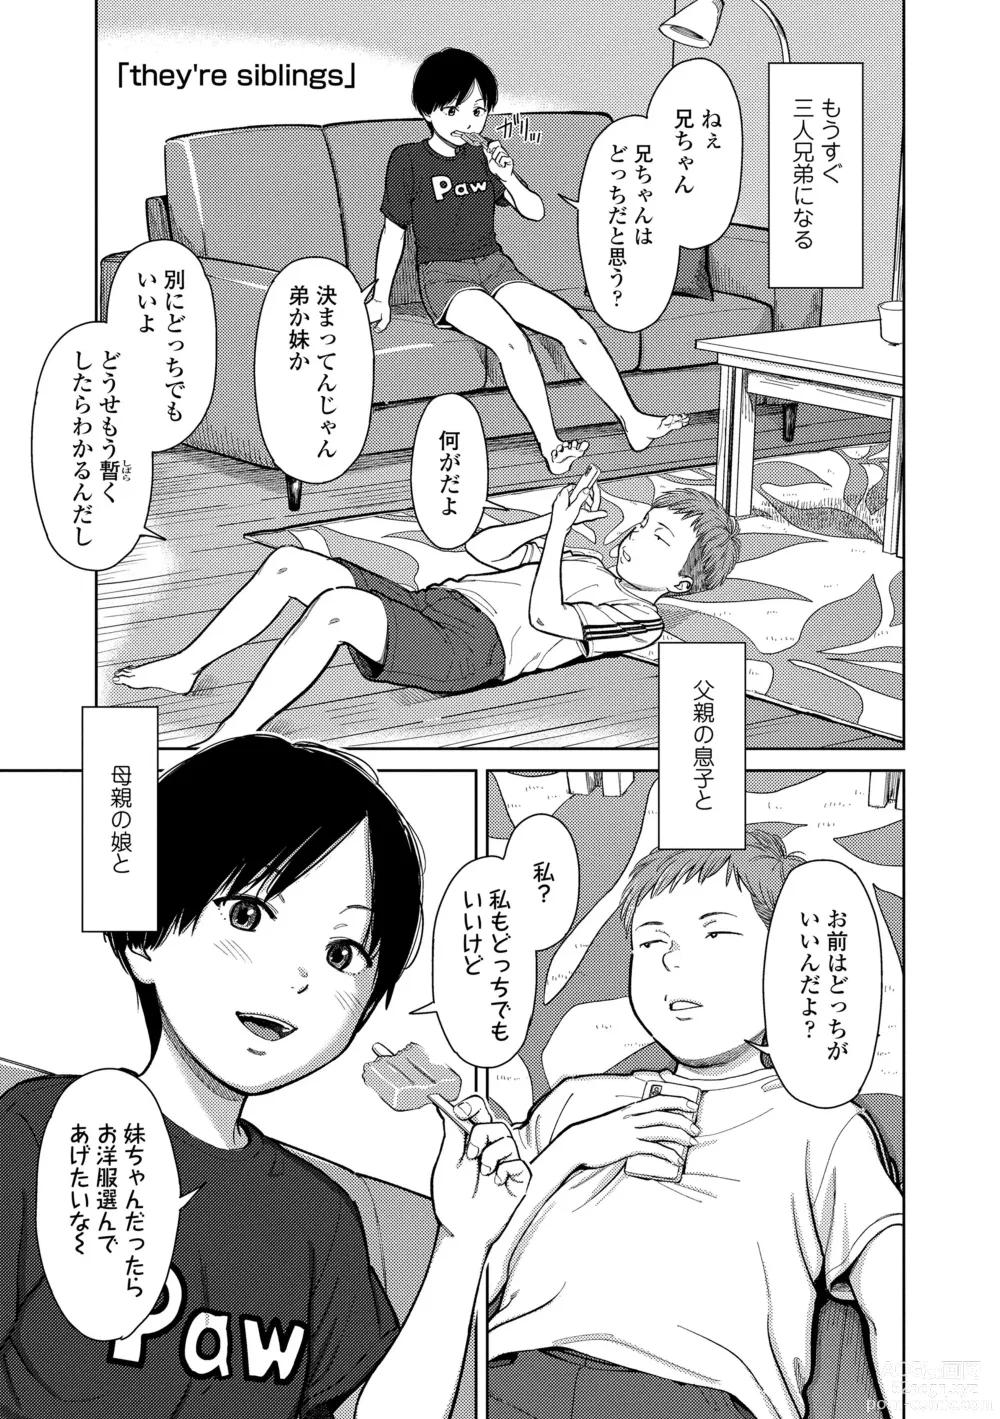 Page 5 of manga Over Kill